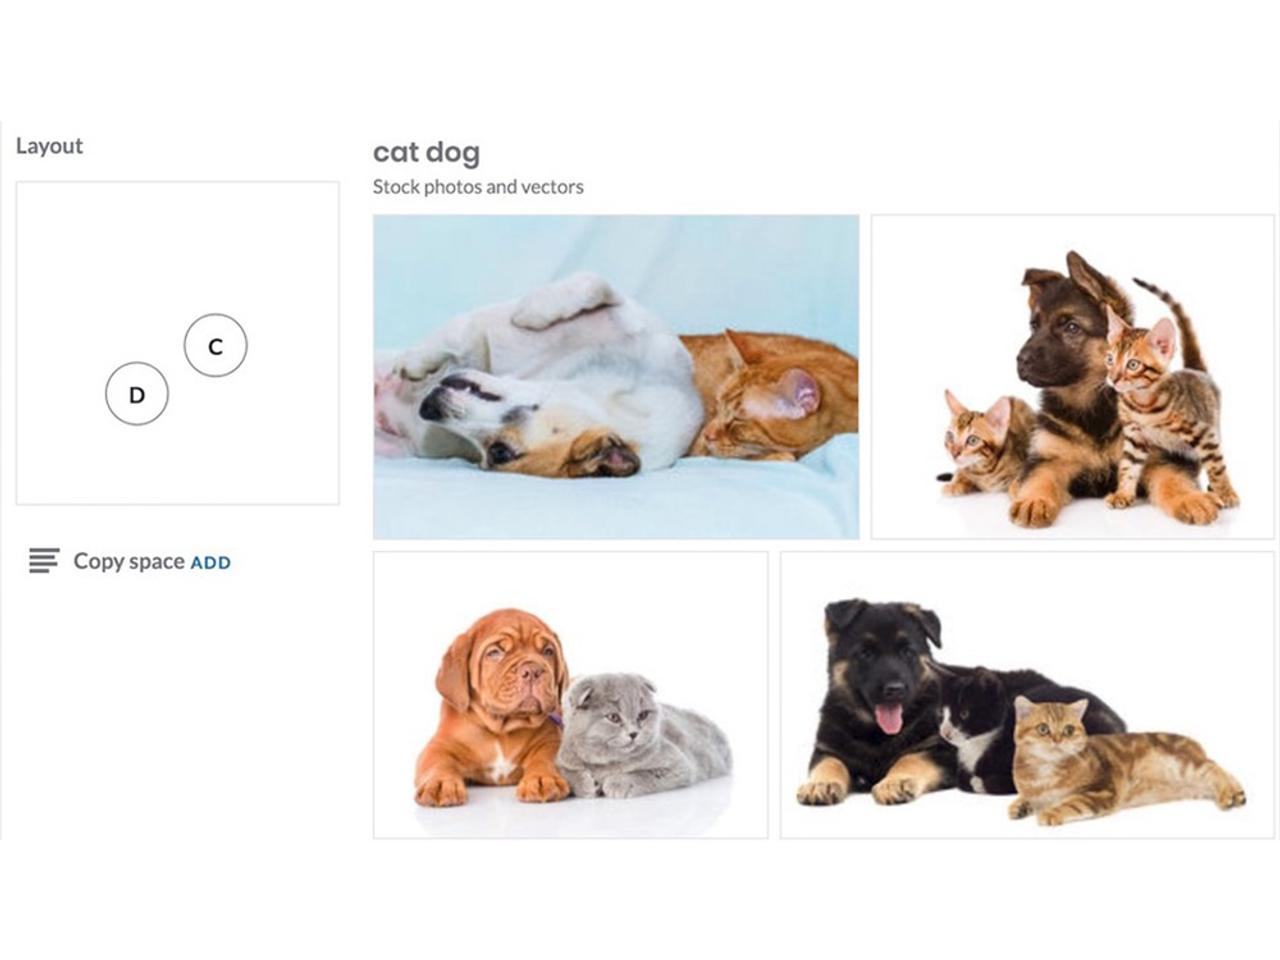 欲しい画像がすぐ見つかる！ Shutterstockがオブジェクトの位置を指定して画像検索できるサービスを公開